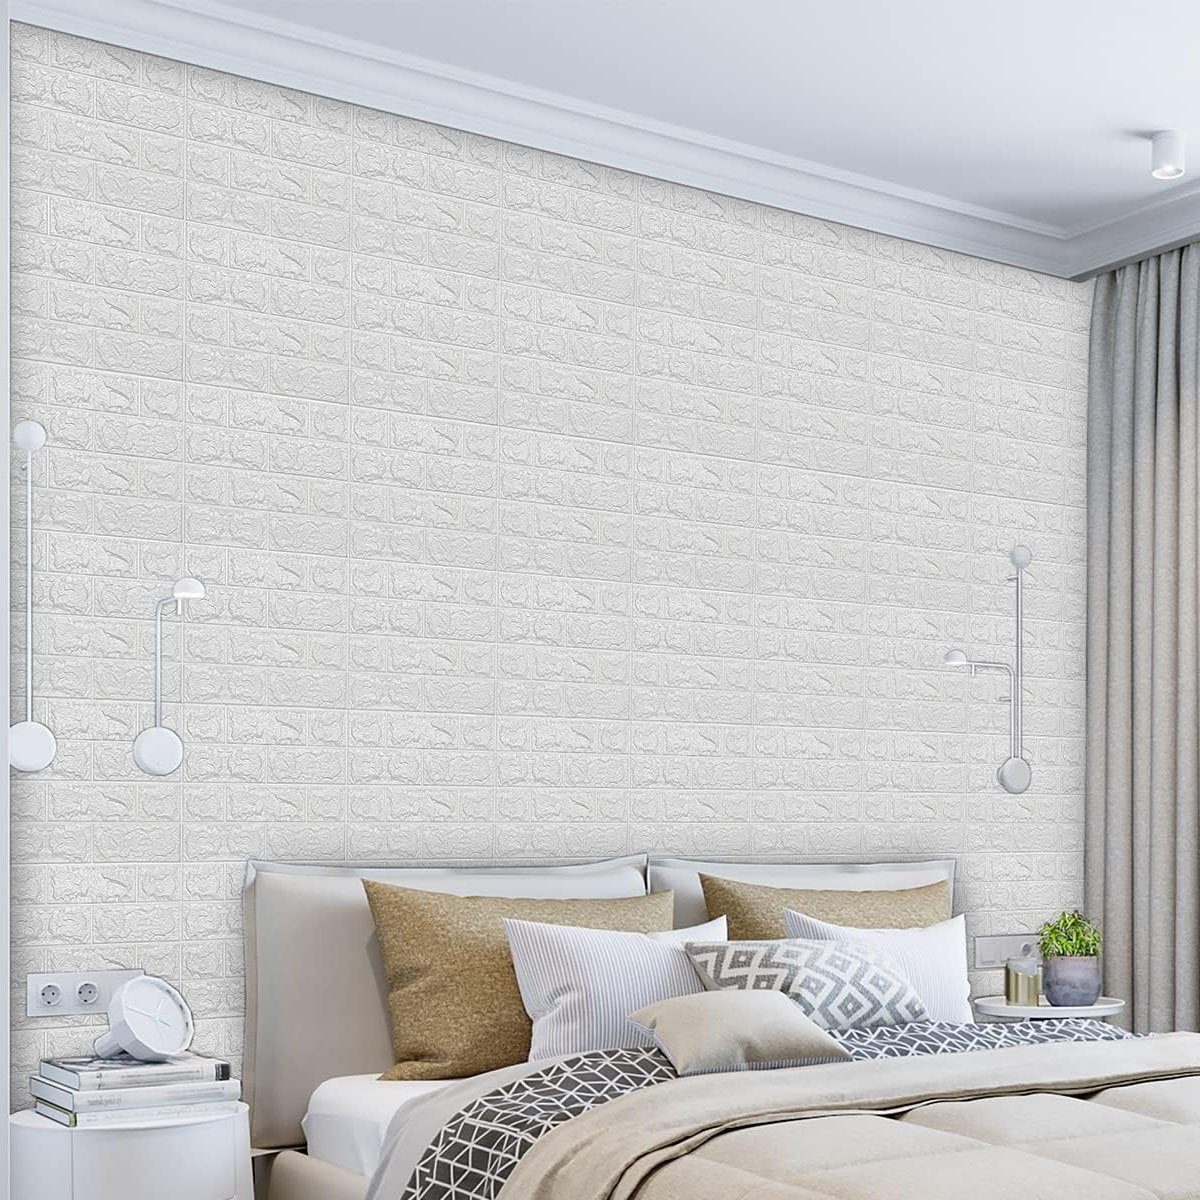 Jormftte Fototapete 3D-Ziegelstein-Tapete,schaum-Ziegelstein-Wandpaneele,für Schlafzimmer Weiß